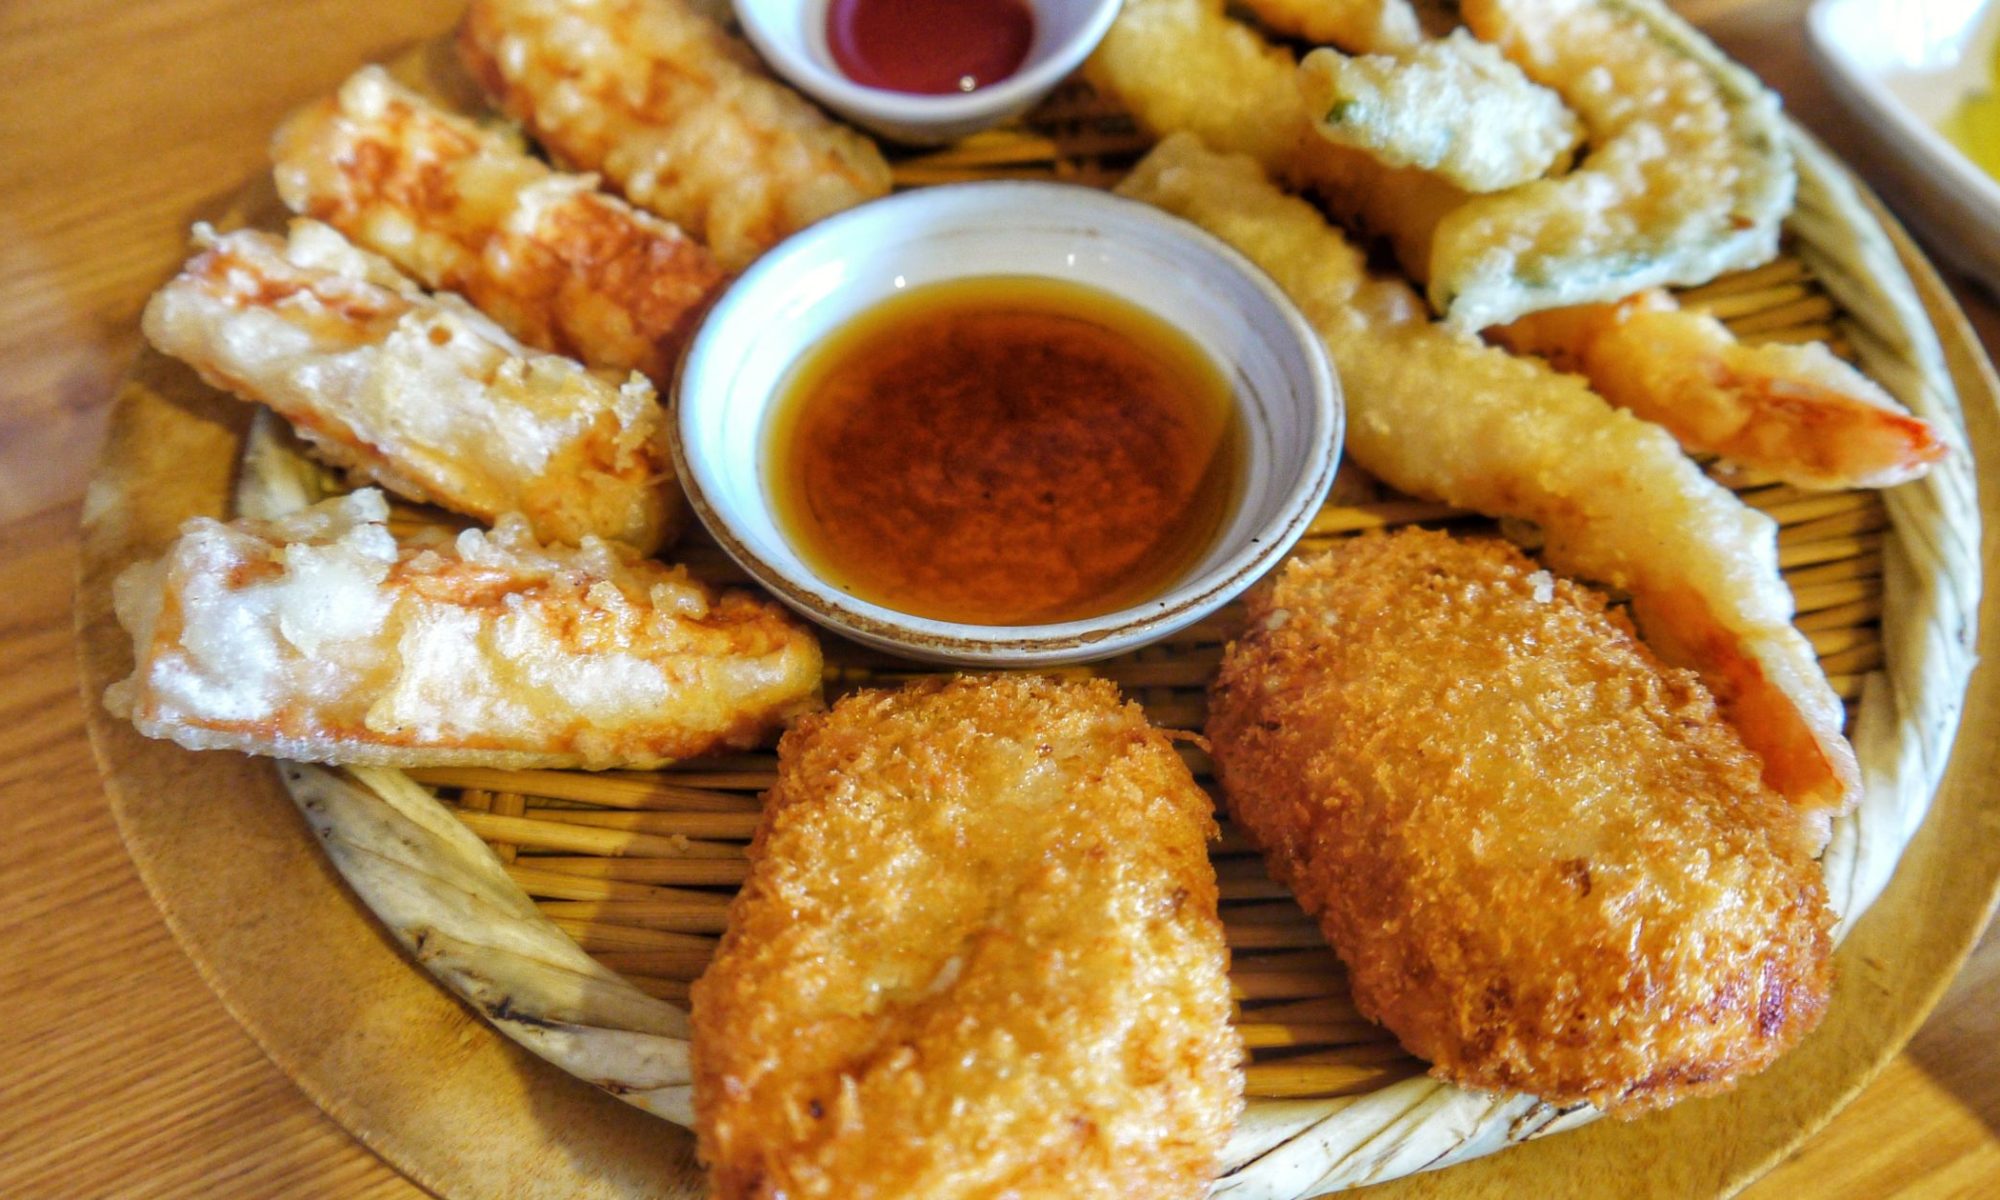 Japanese Fried Food: Crispy Delights of Japan